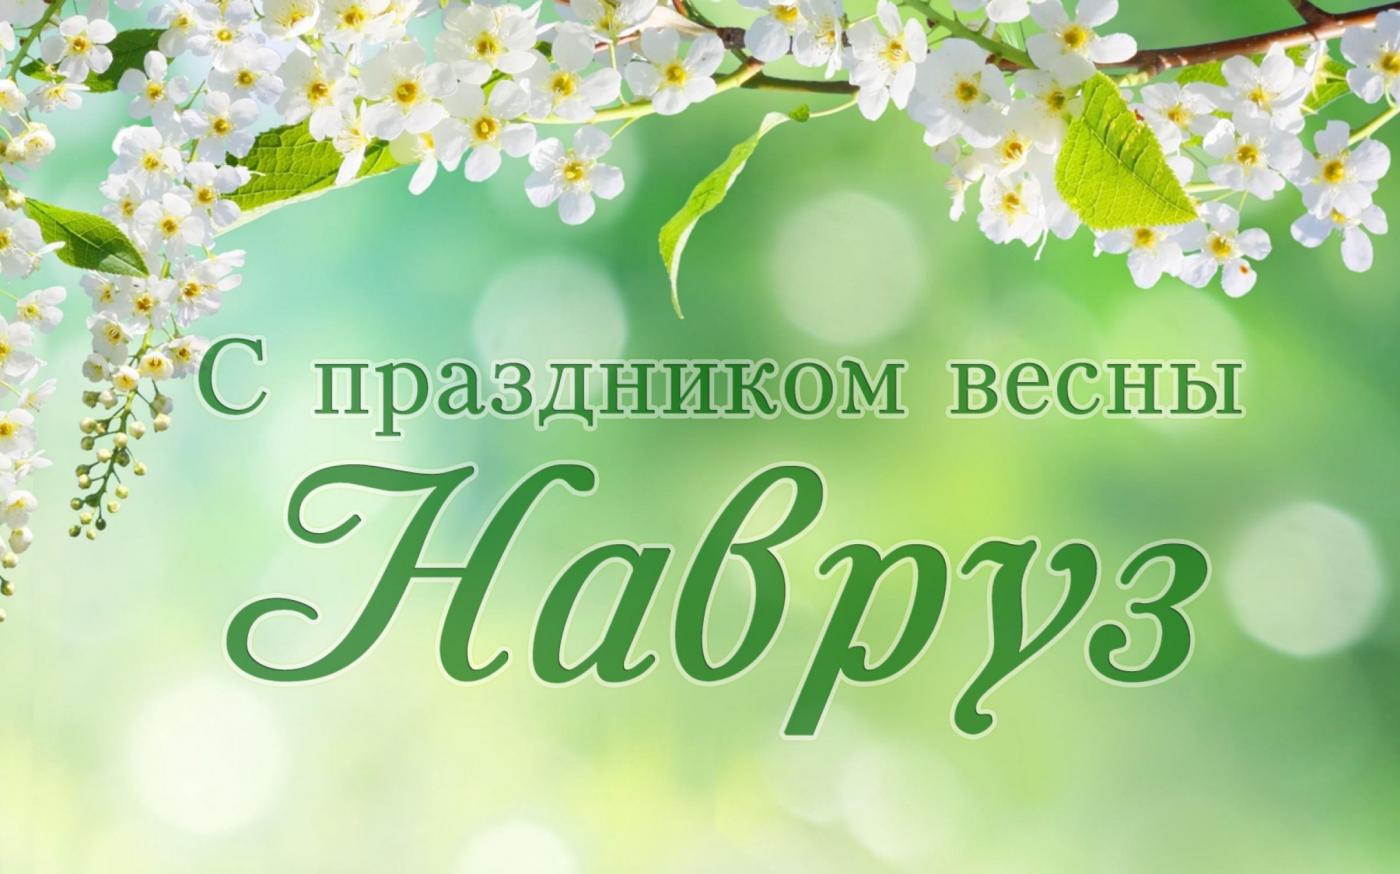 21 марта отмечается праздник весны Навруз: значение, традиции, обычаи